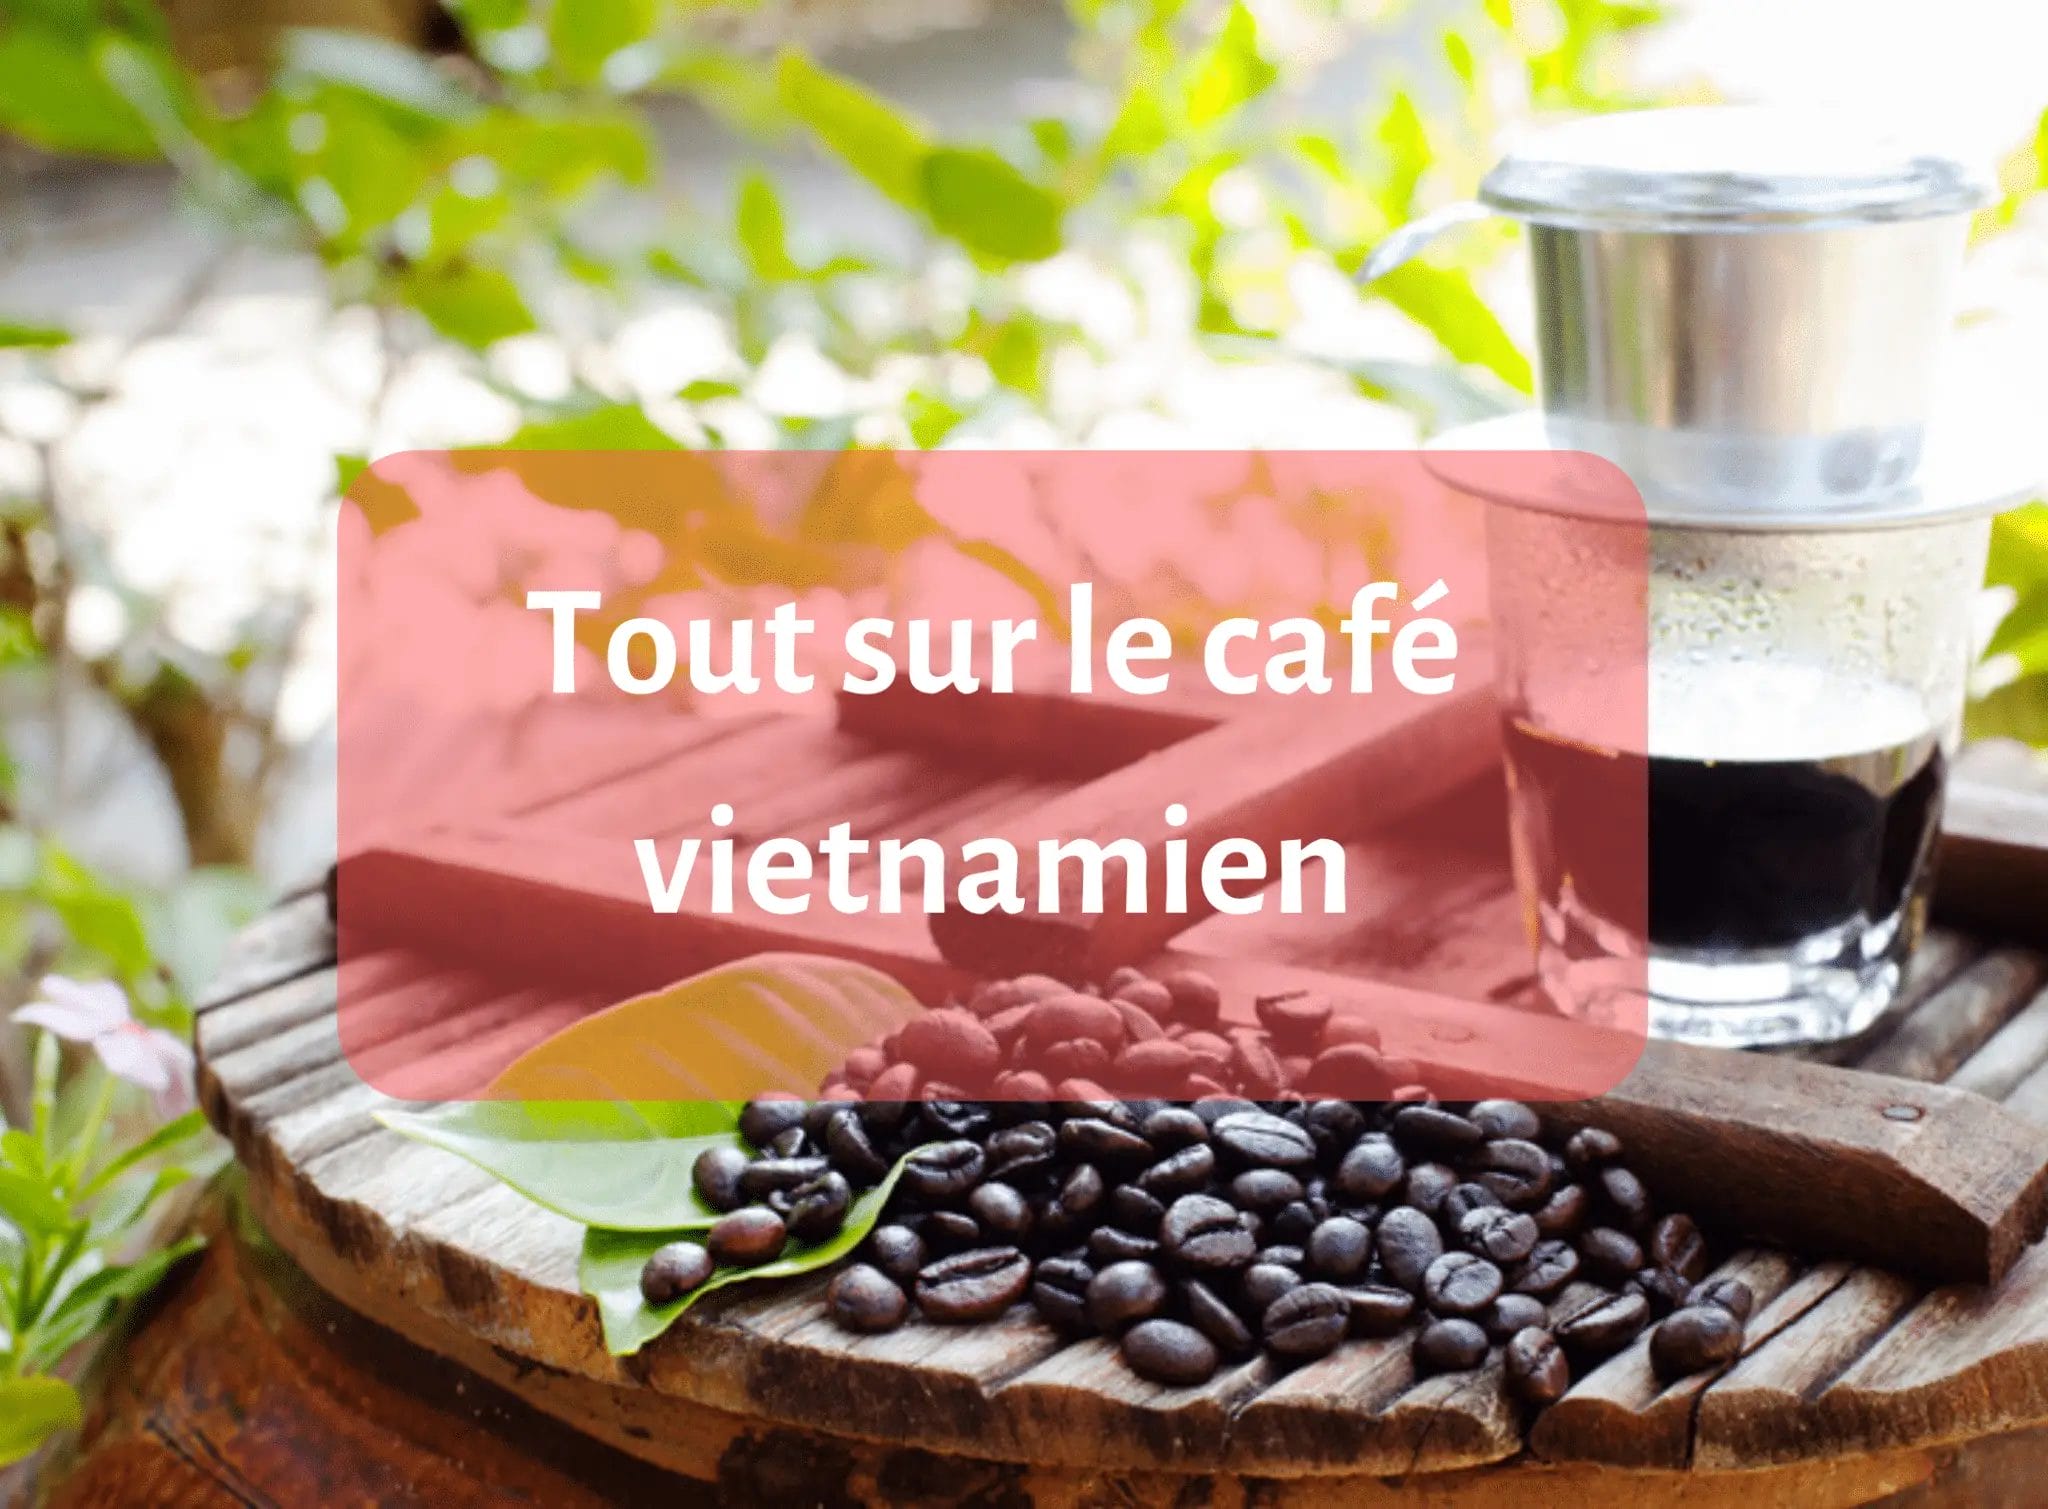 Tout sur le café vietnamien - café du monde - info - cafetière bon café